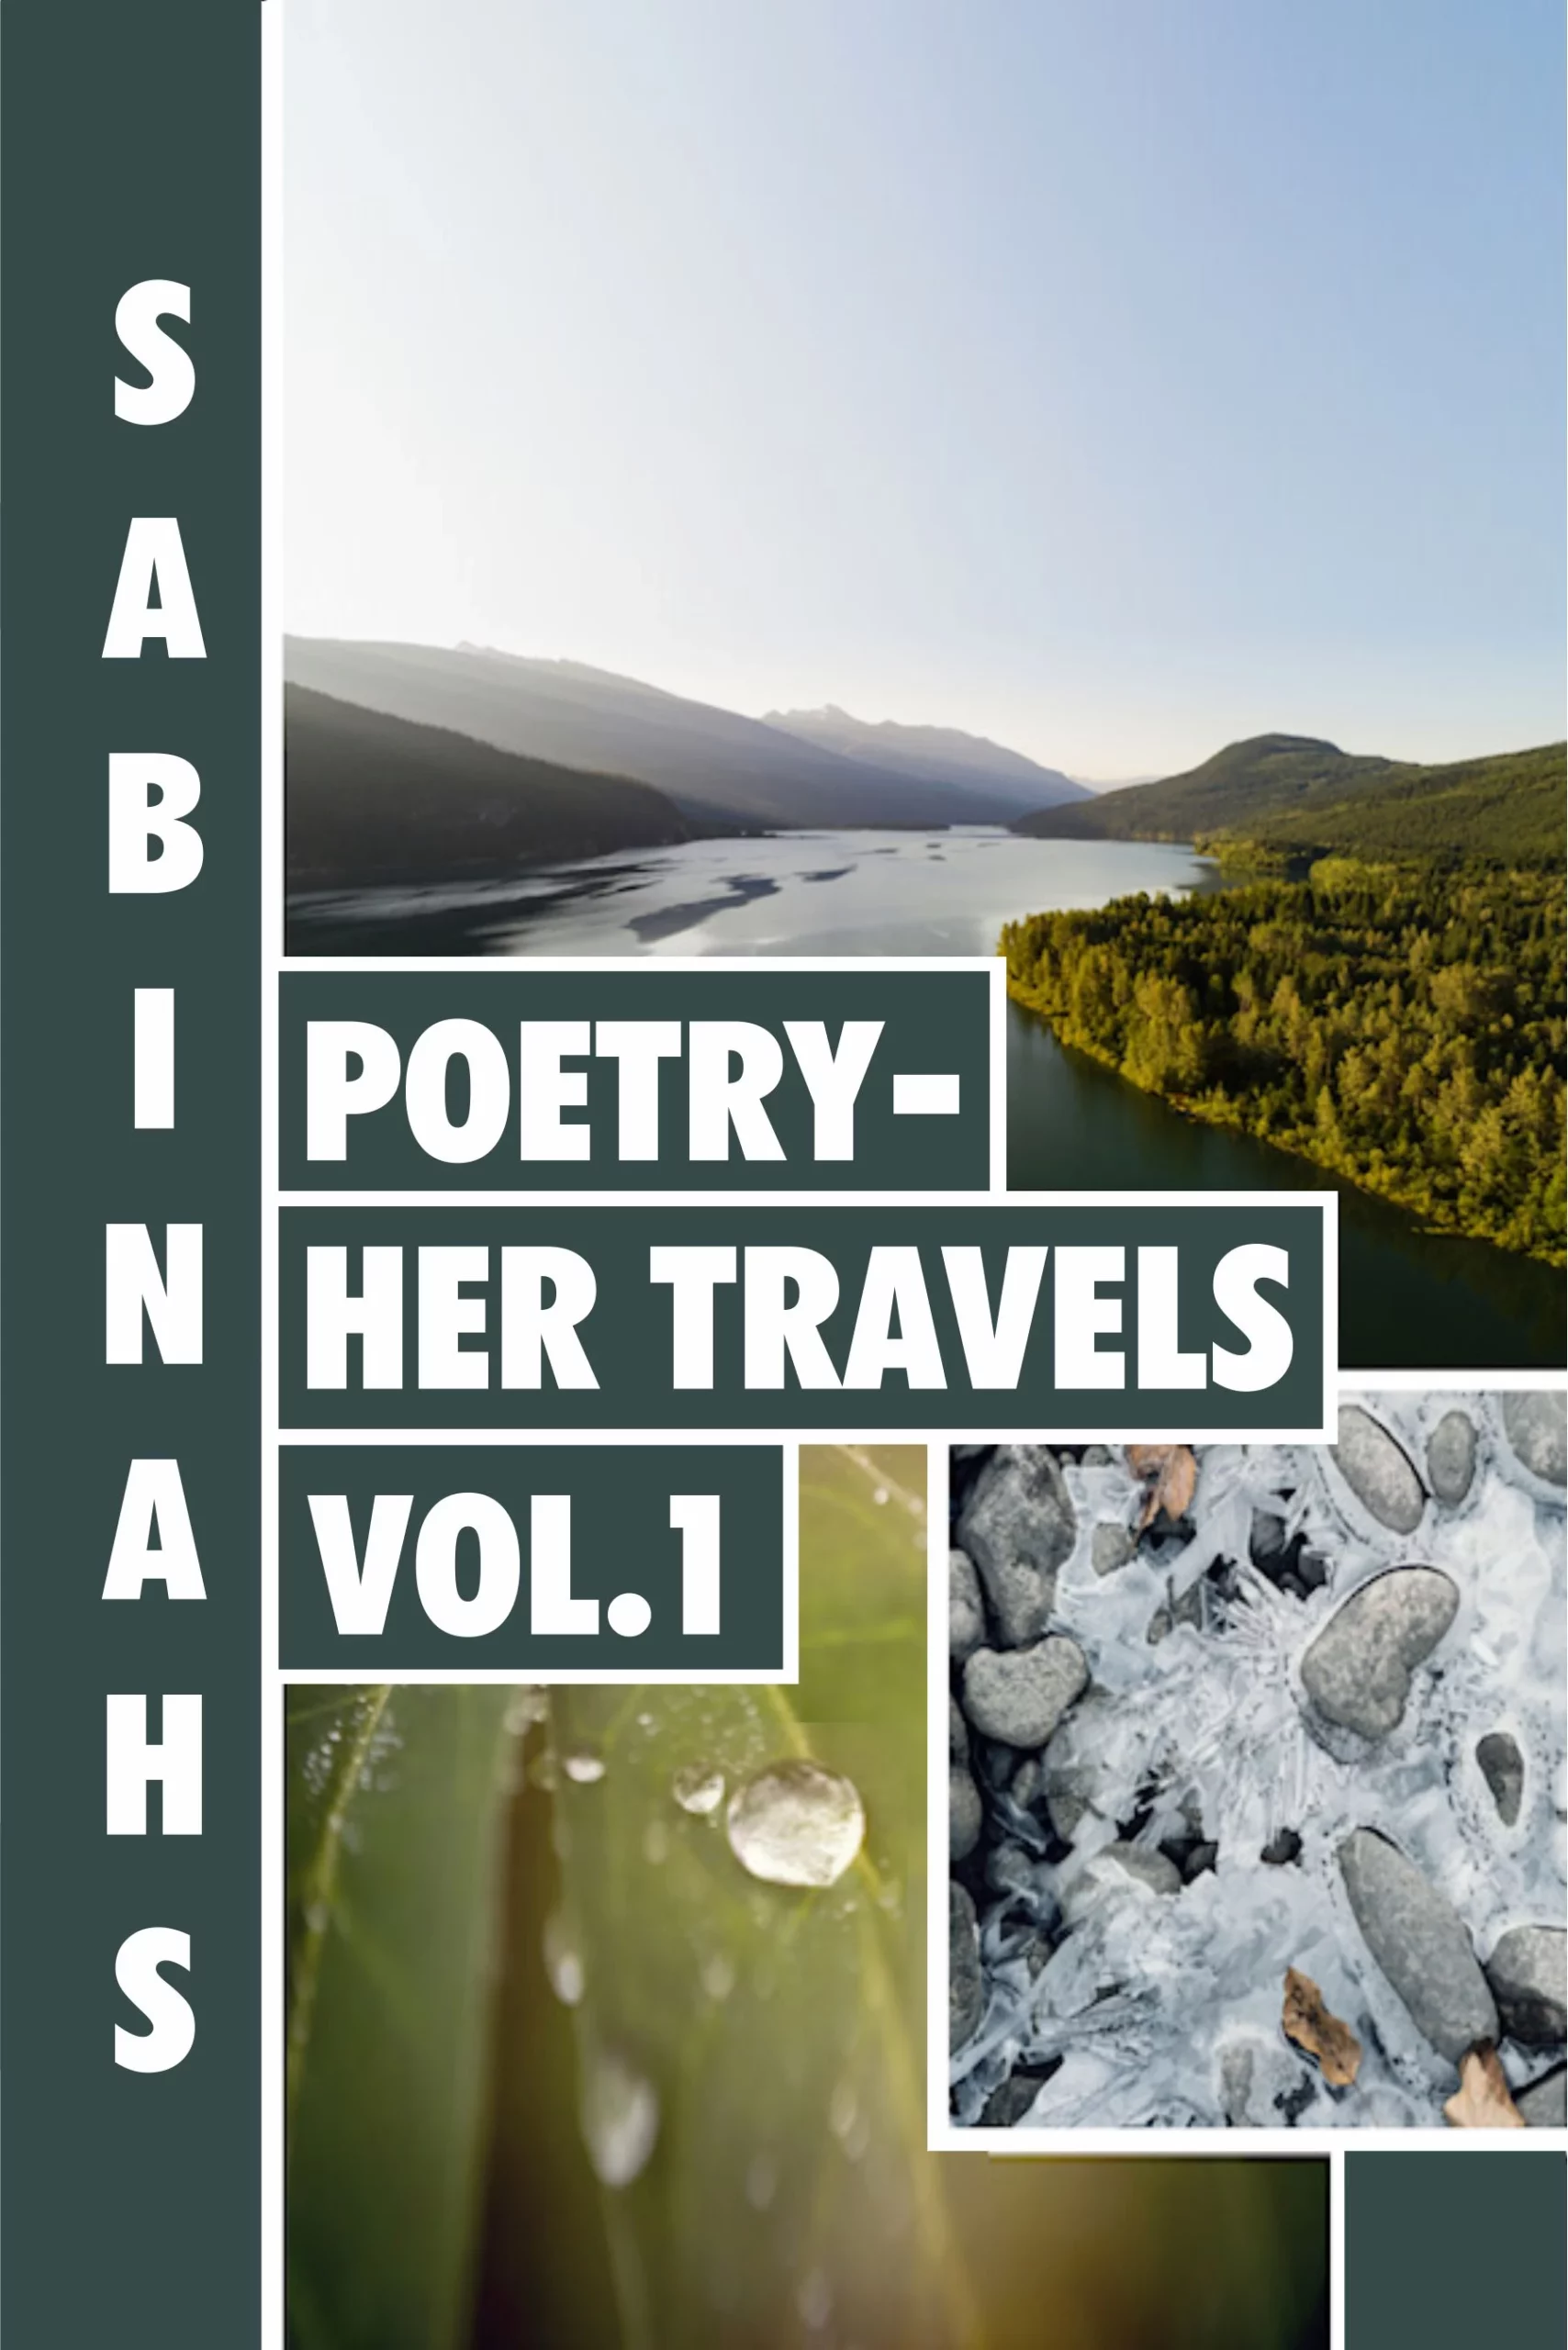 Sabinah’s Poetry -Her Travels Volume 1